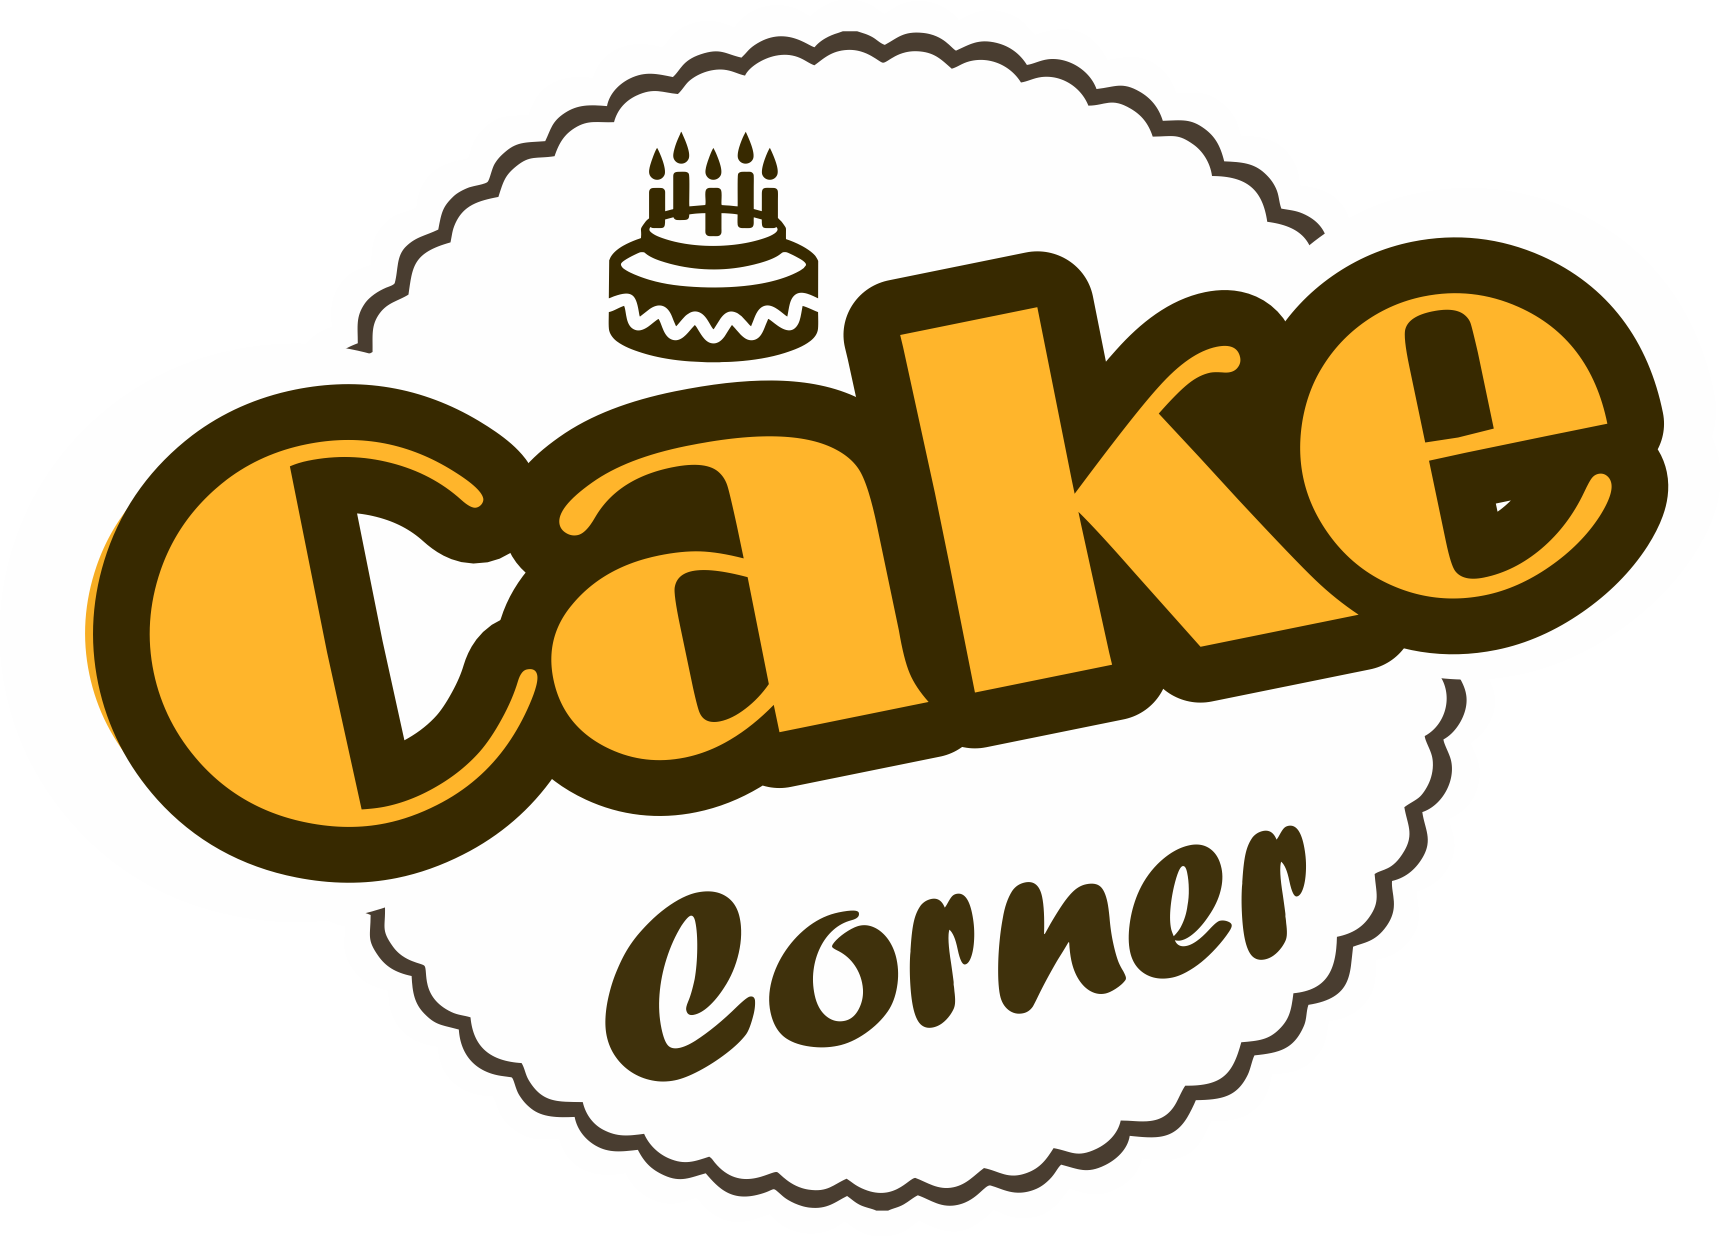 Cake Corner